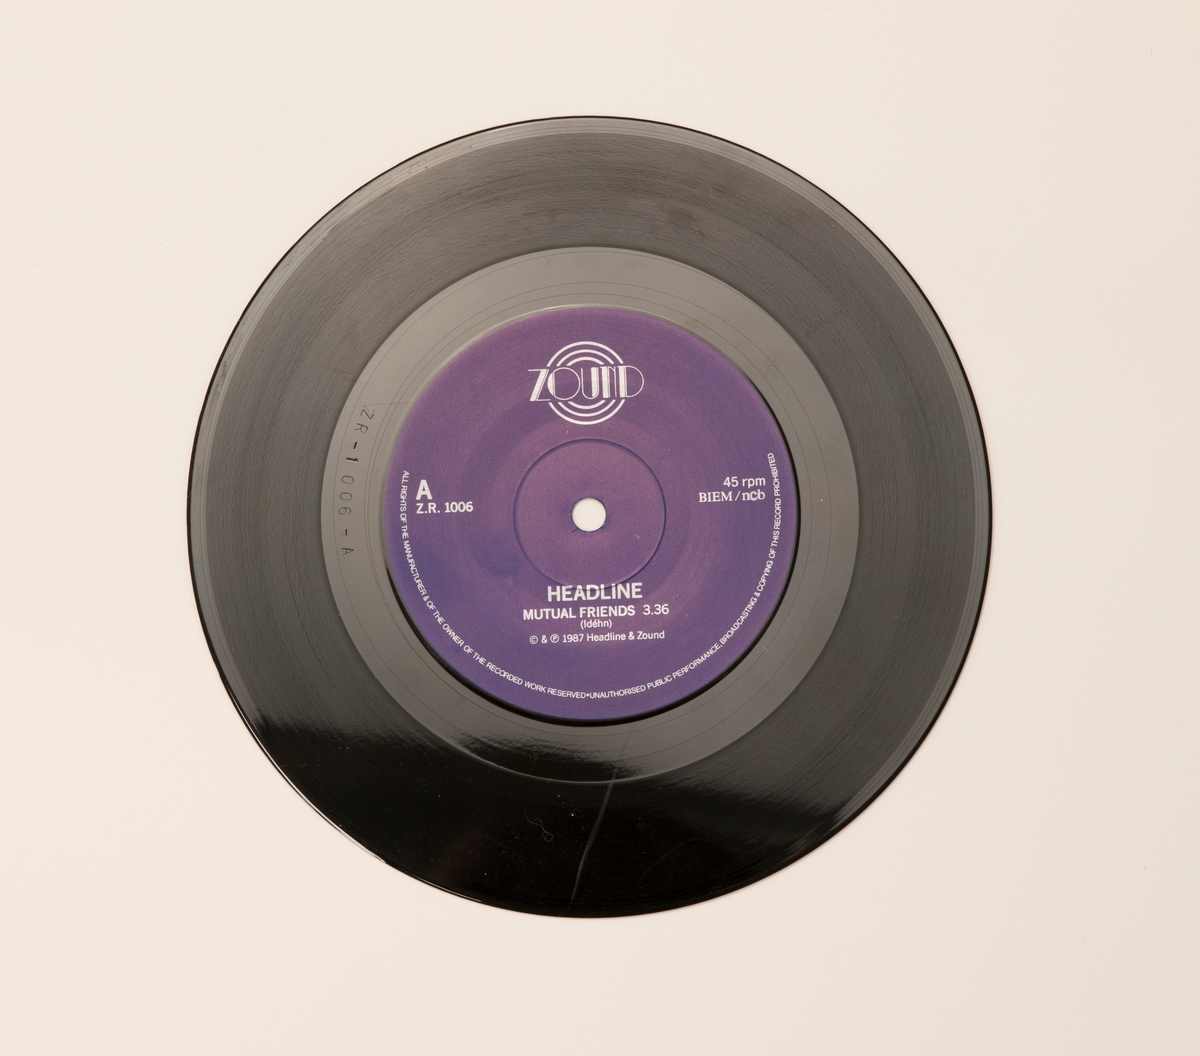 Singel-skiva av svart vinyl med lila pappersetikett, i omslag av papper.

Innehåll
Sida A: Mutual Friends
Sida B: Painkiller

JM 55210:1, Skiva
JM 55210:2, Omslag